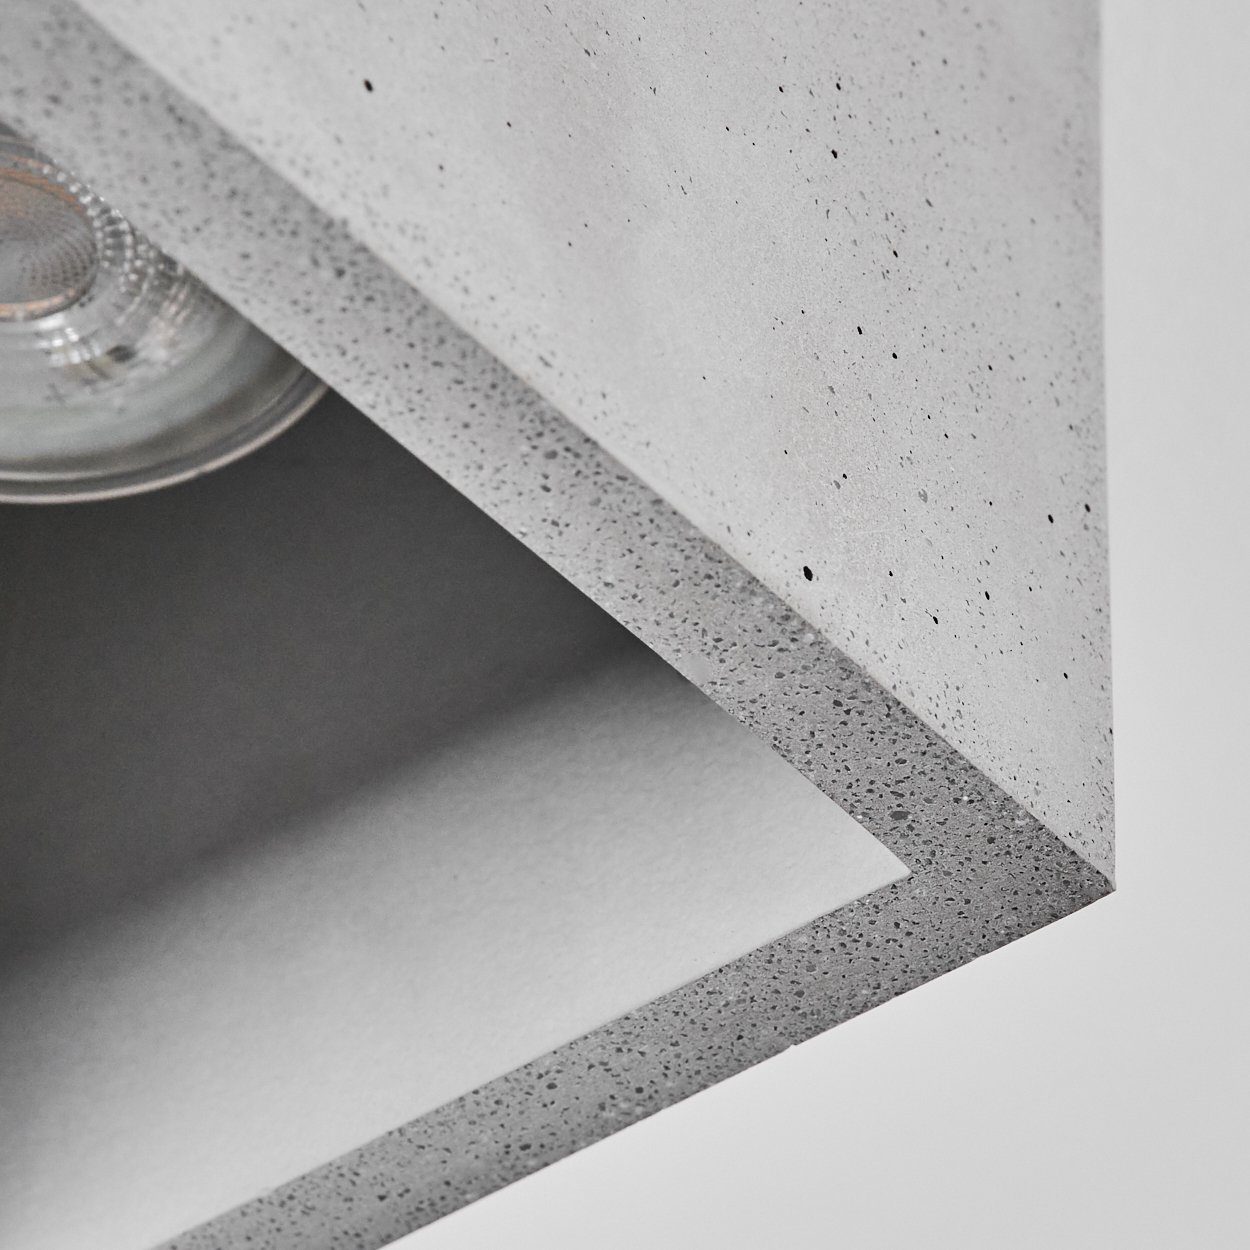 hofstein »Portegrandi« in Deckenleuchte 1xGU10 Grau, ohne Leuchtmittel, eckige moderne Design, Deckenlampe schlichten aus Leuchte im Beton